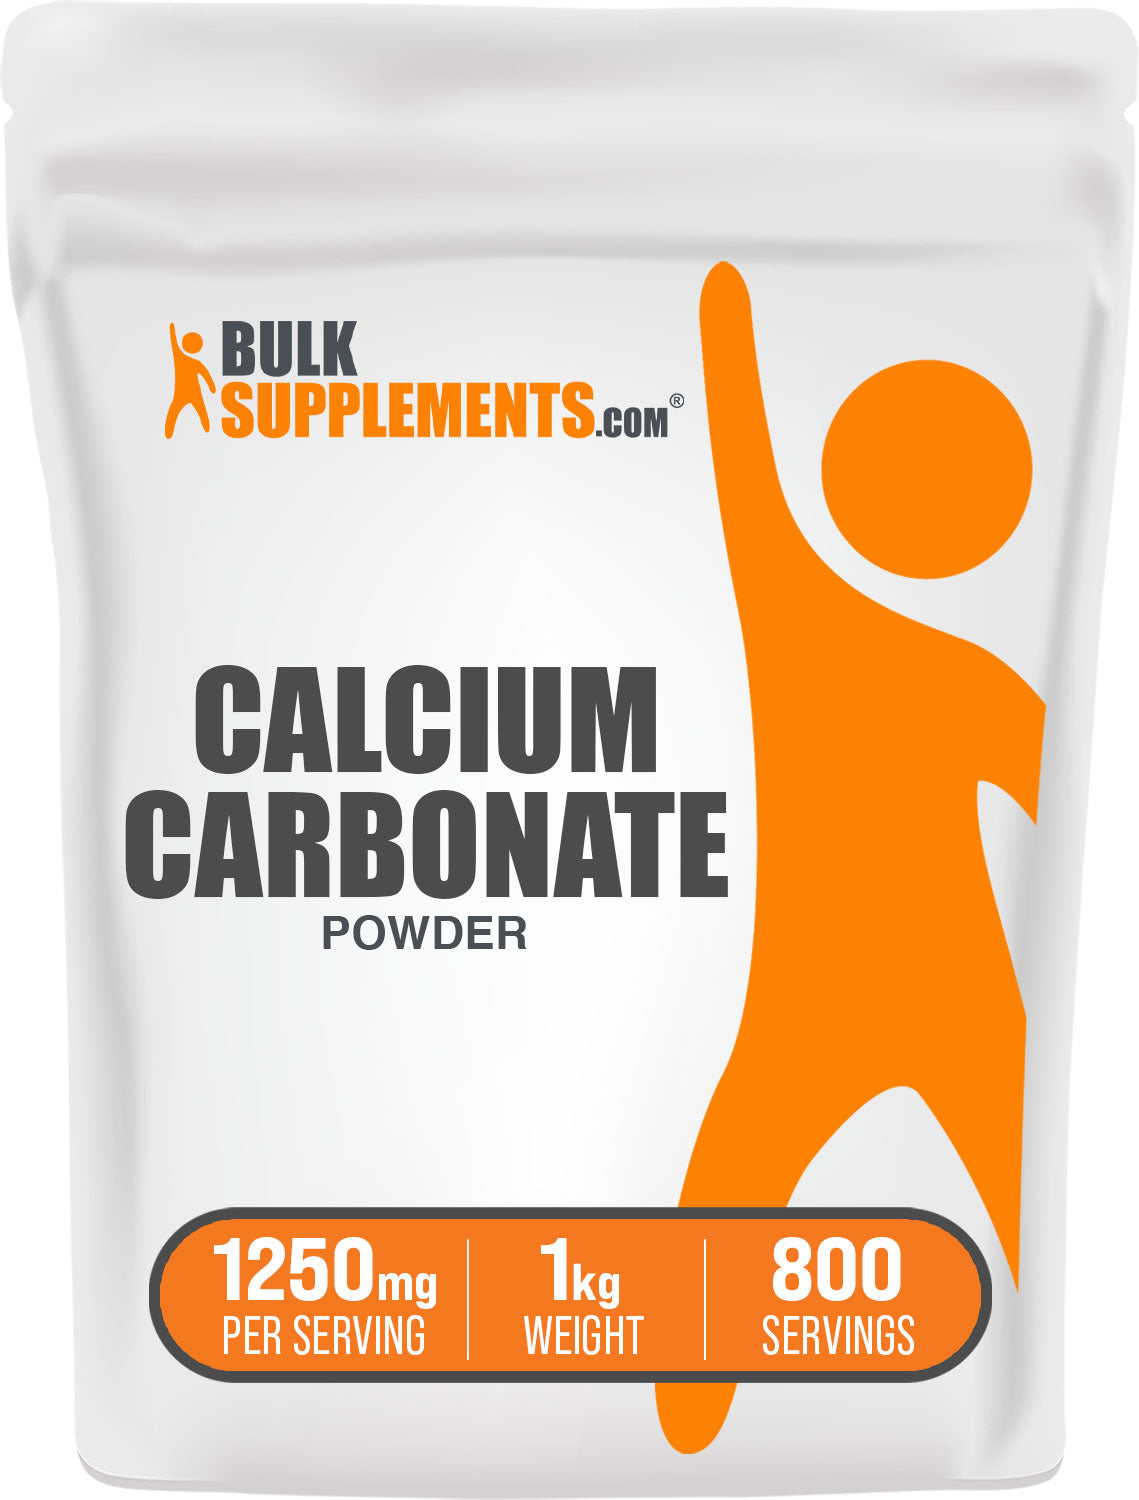 1kg calcium carbonate powder